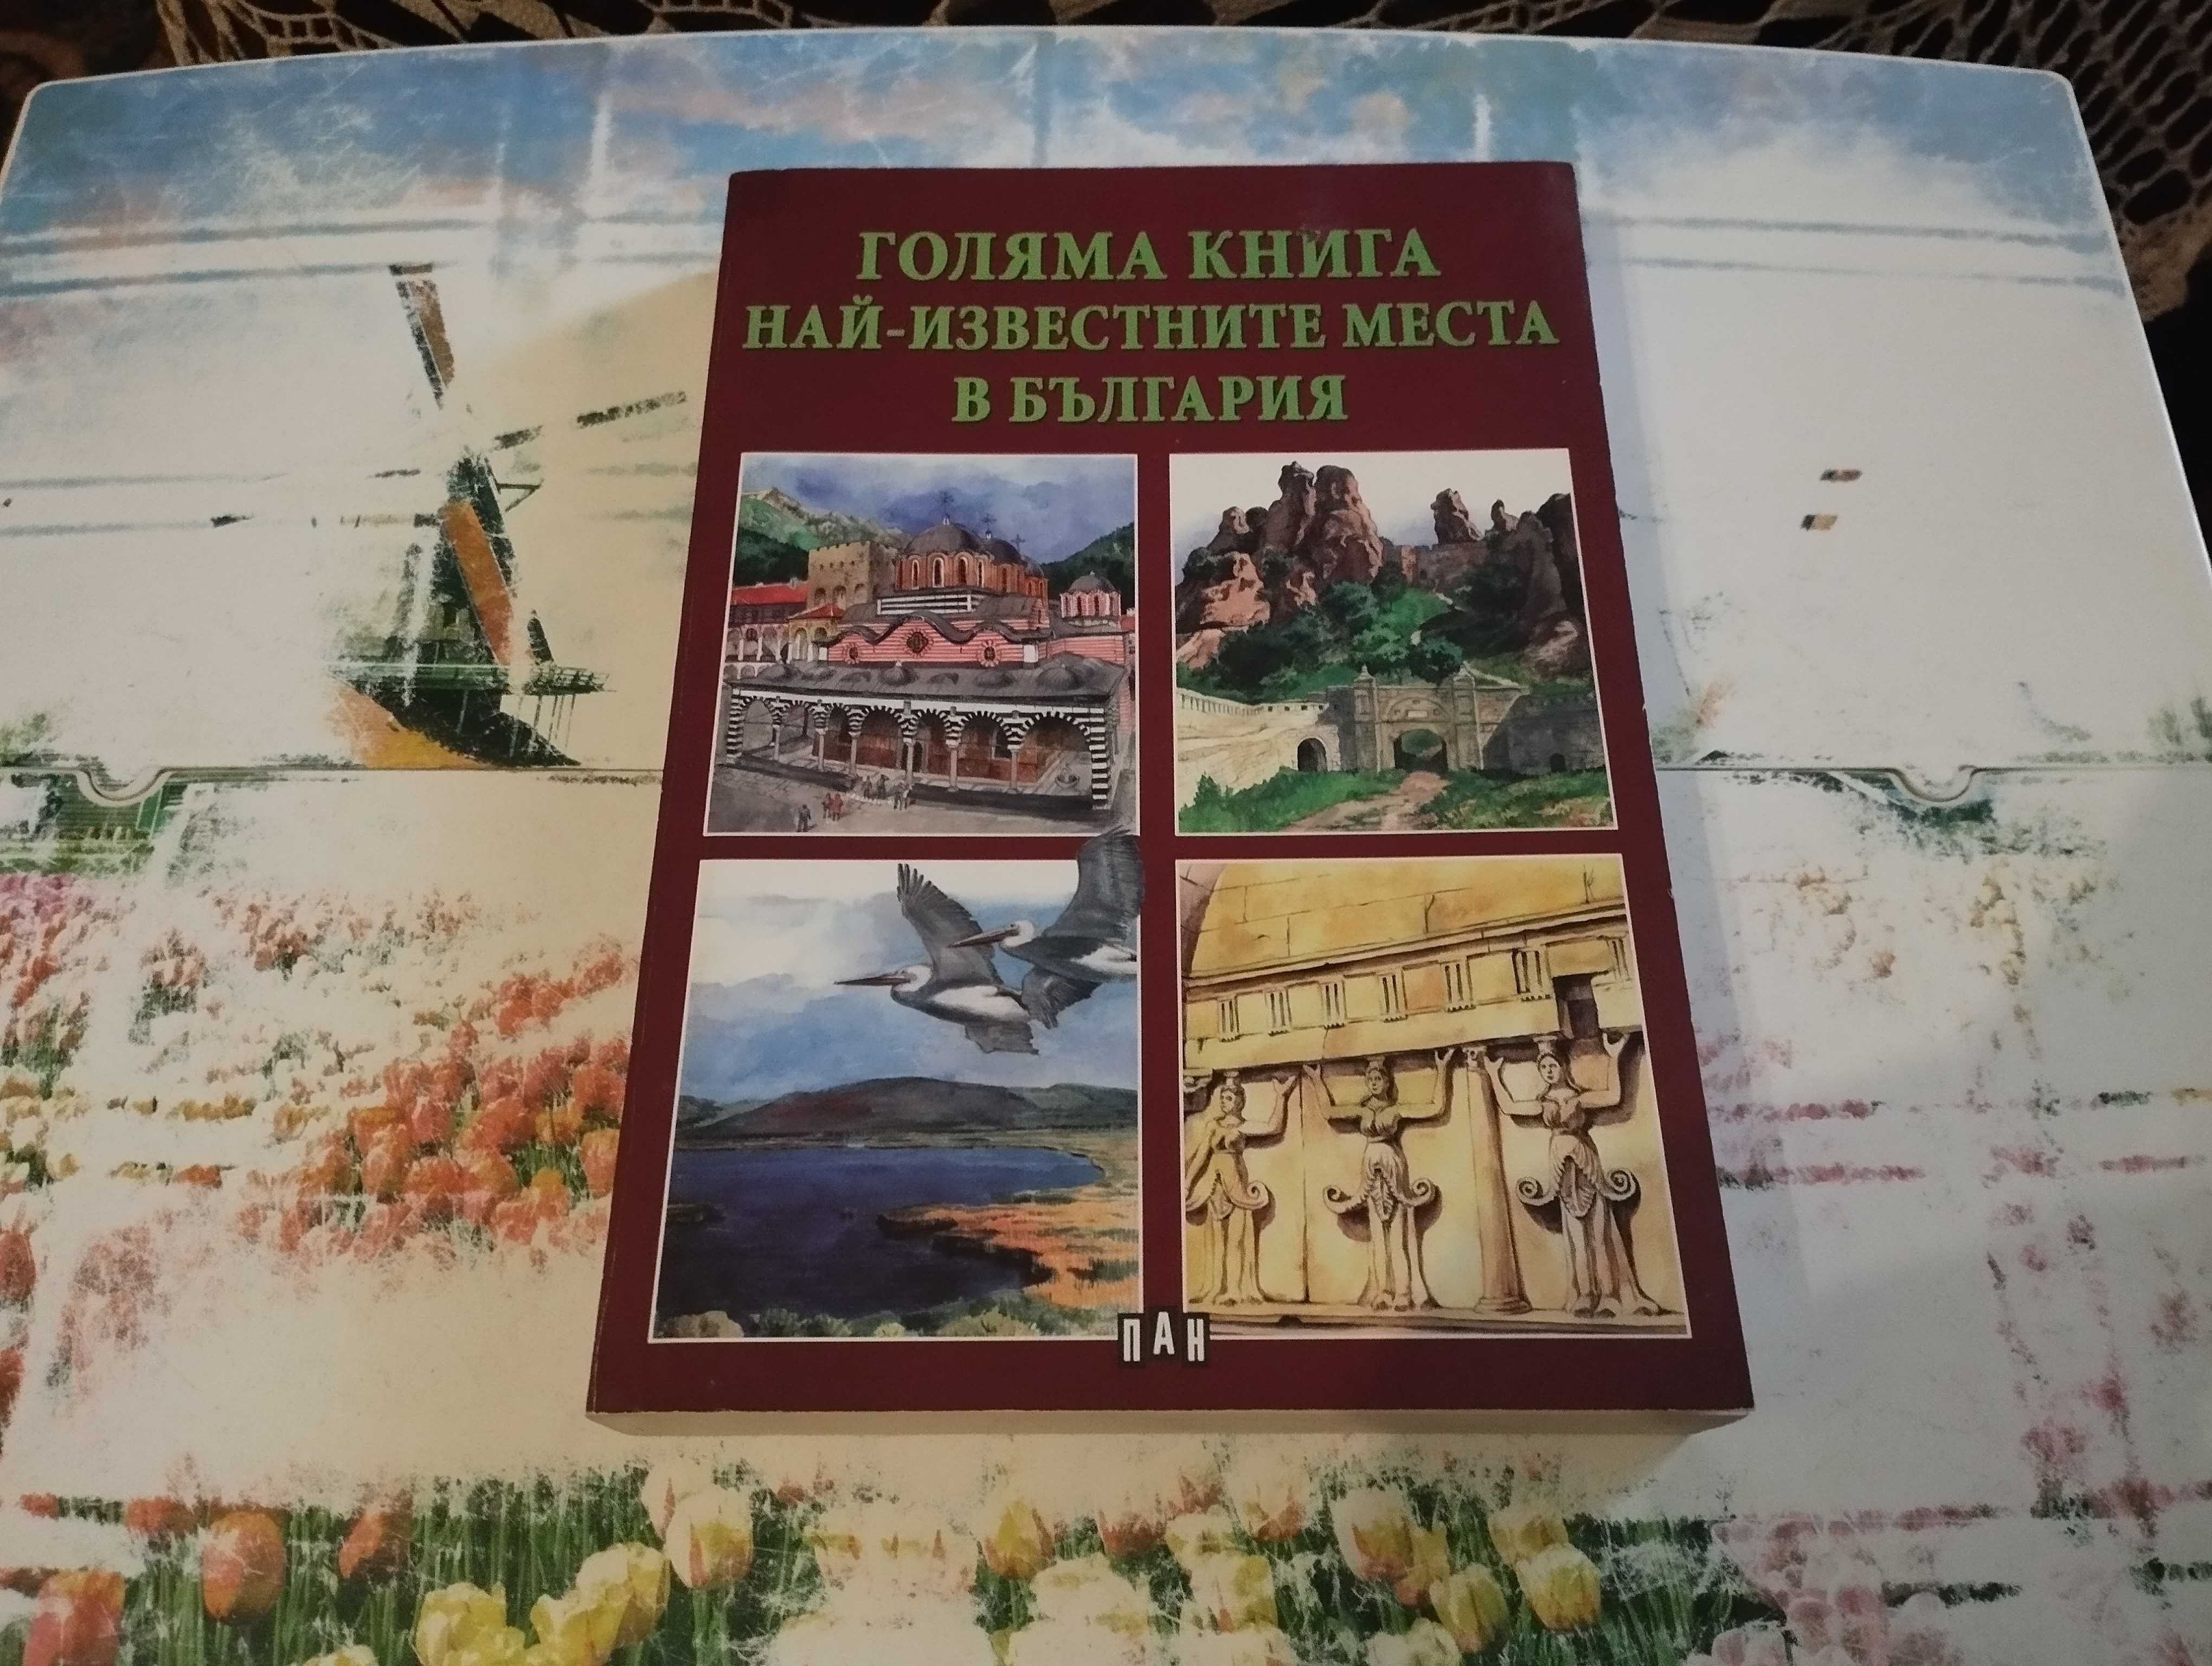 Книга: Най - известните места в България